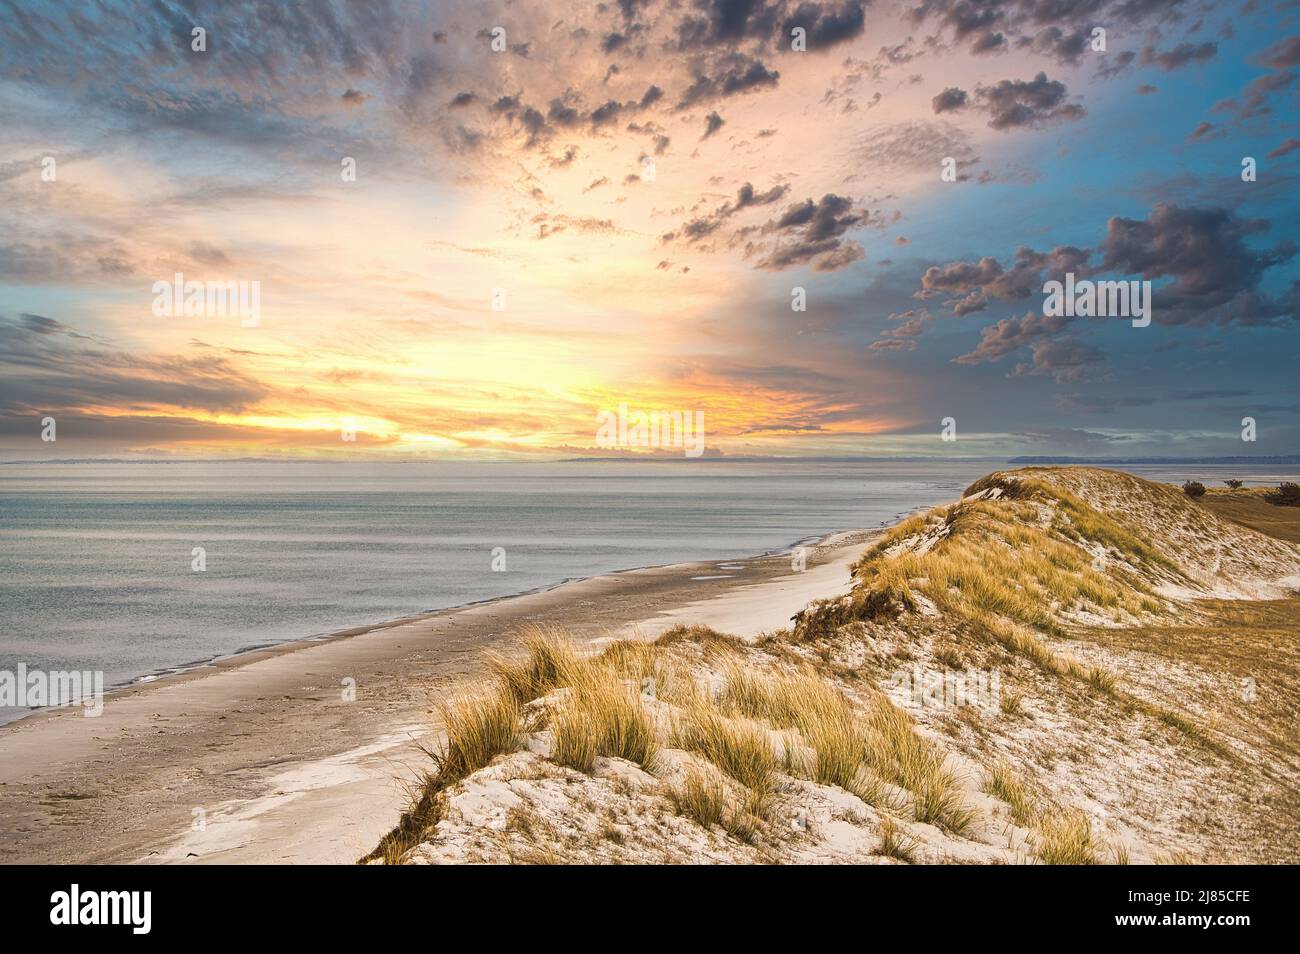 Dramatischer Sonnenuntergang an der hohen Düne auf dem darss. Aussichtspunkt im Nationalpark. Strand, Ostsee, Himmel und Meer. Natur in Deutschland aufgenommen Stockfoto